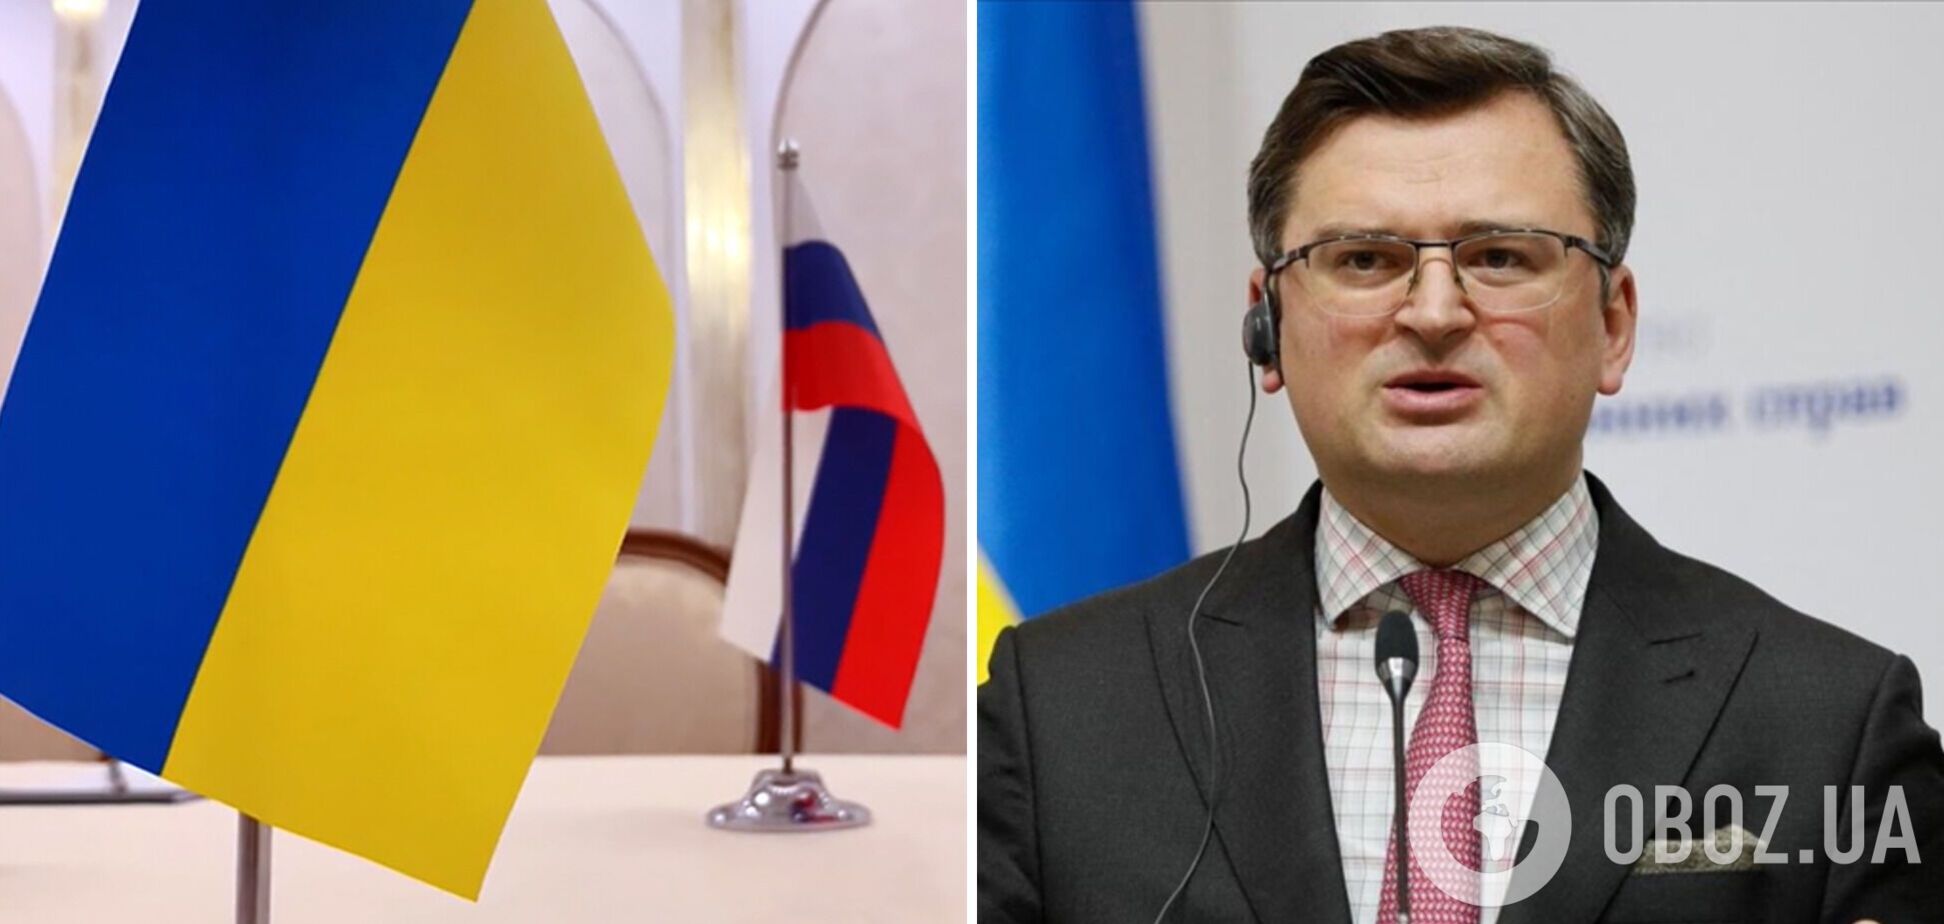 Погрози Україні продовжуються: посольства в Данії та Румунії отримали підозрілі пакунки